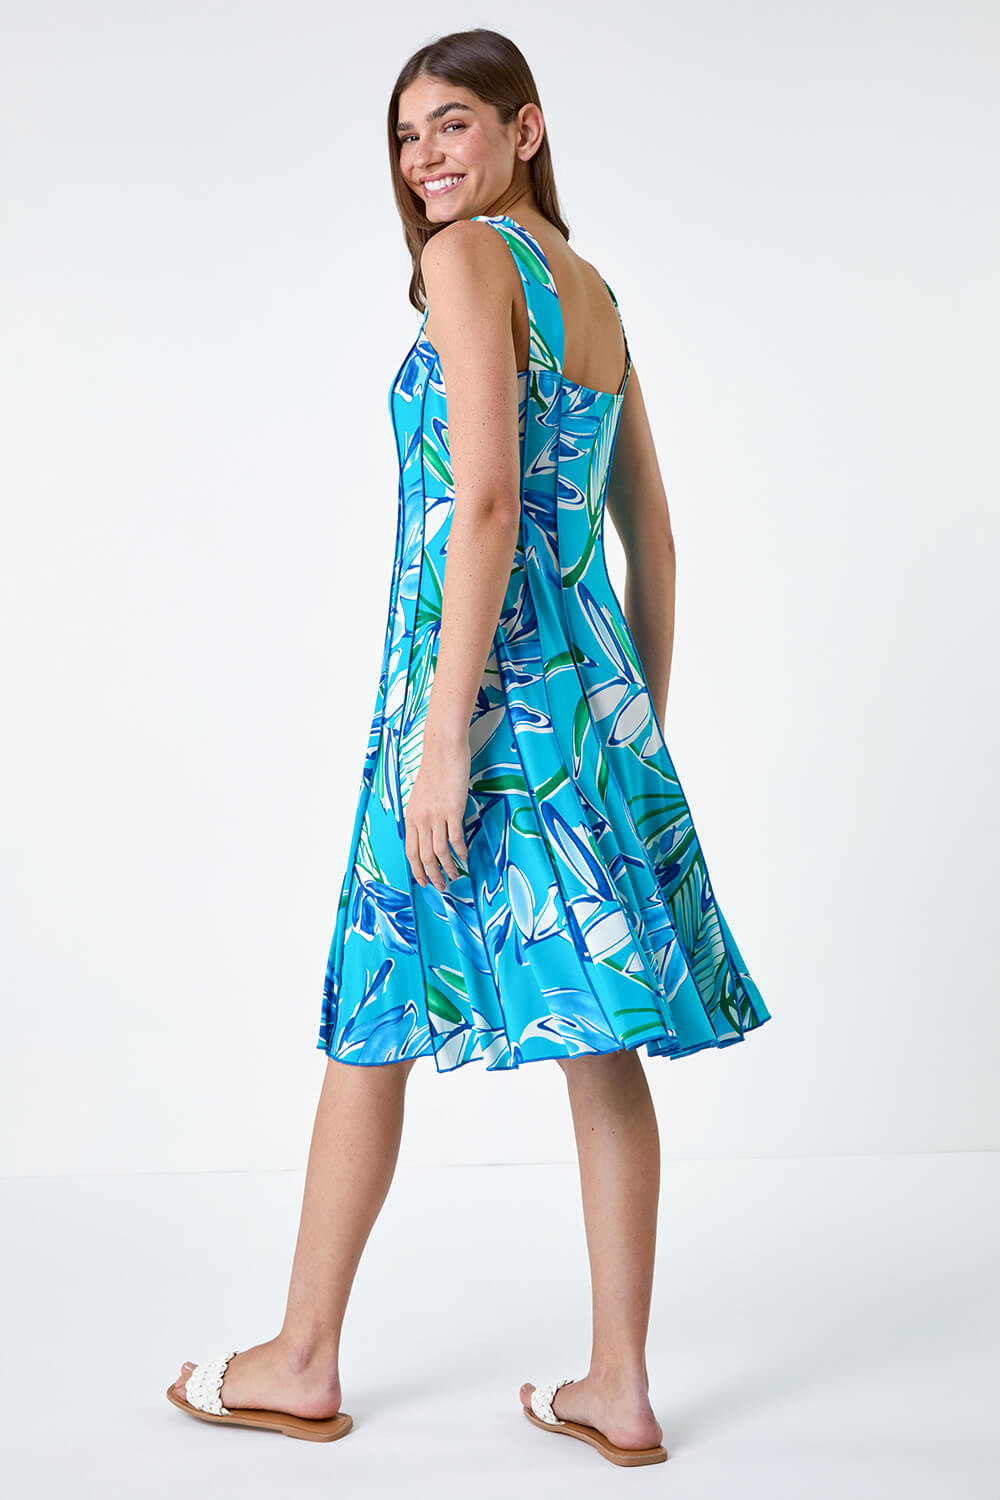 Aqua Leaf Print Stretch Panel Dress, Image 3 of 5